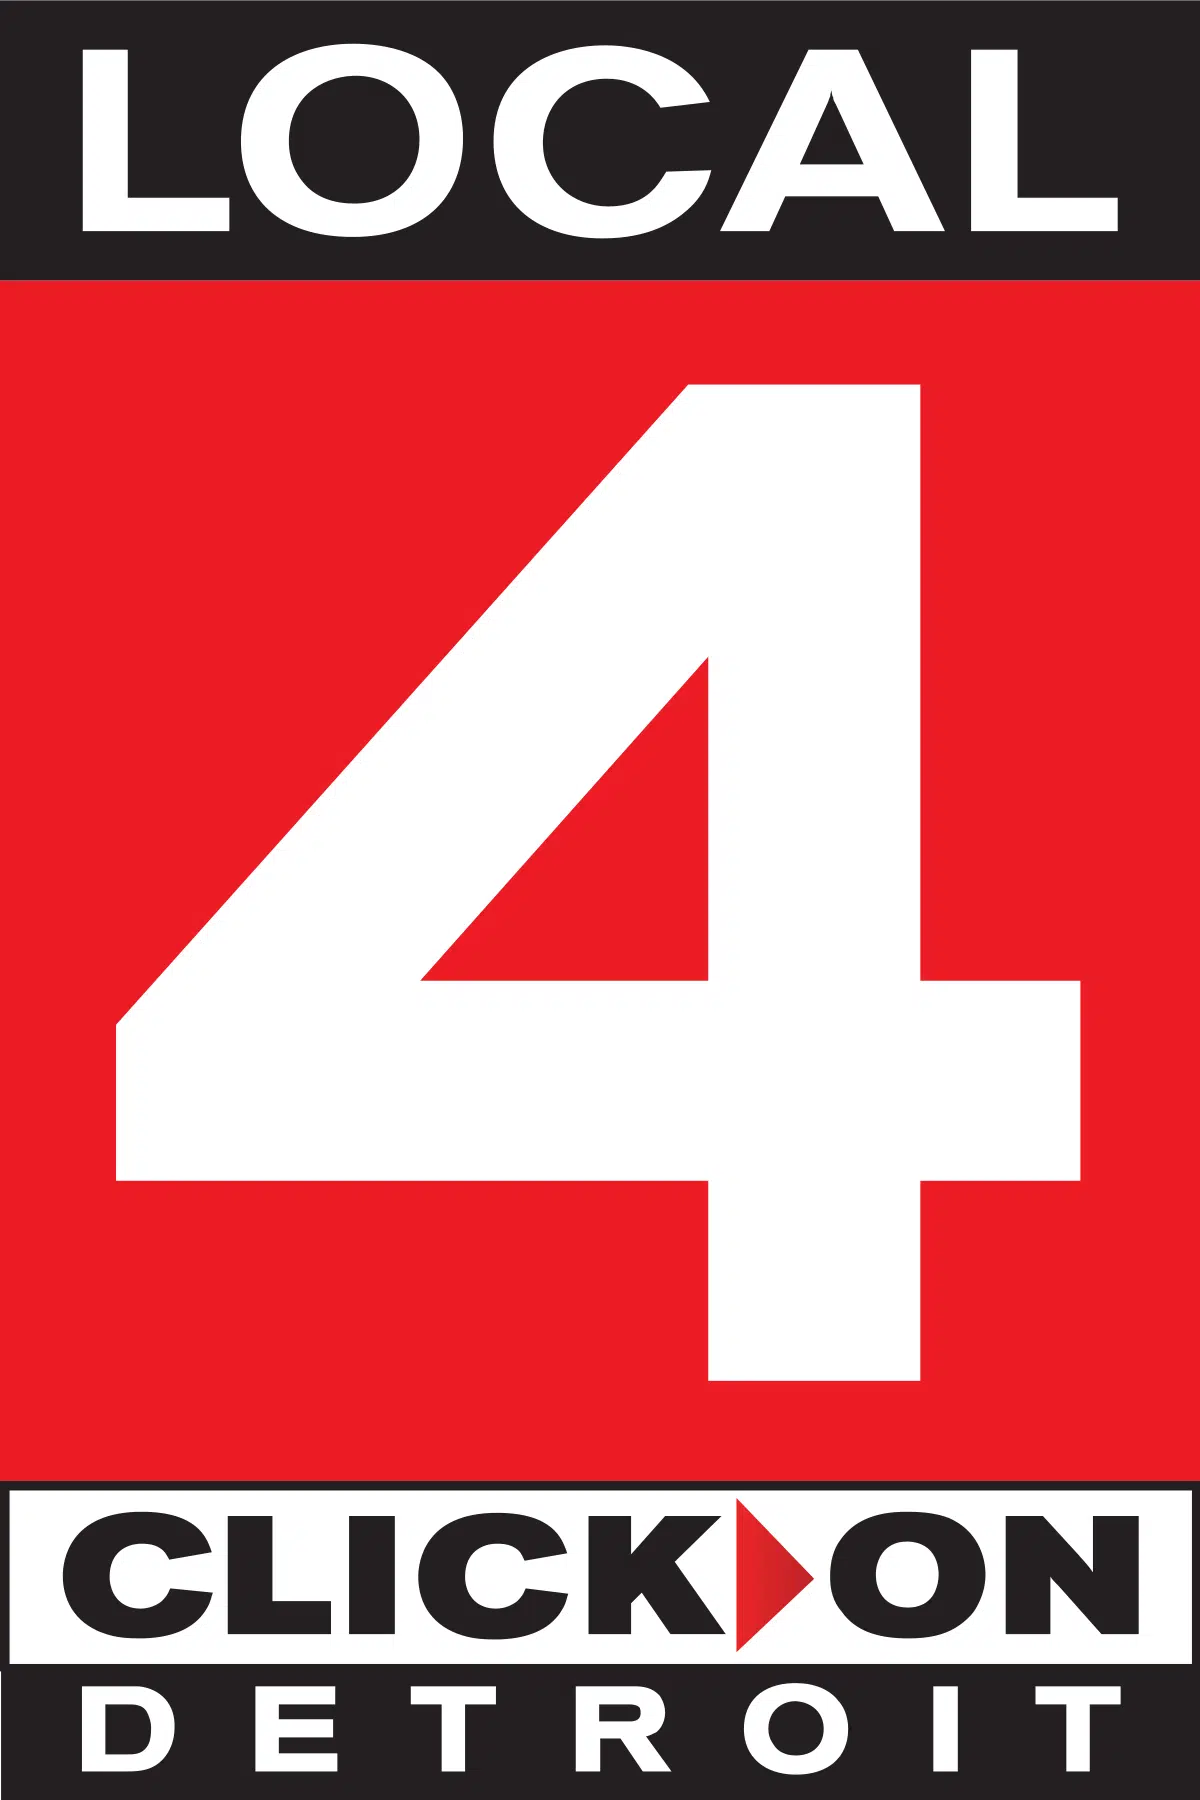 WDIV-TV Detroit logo in color